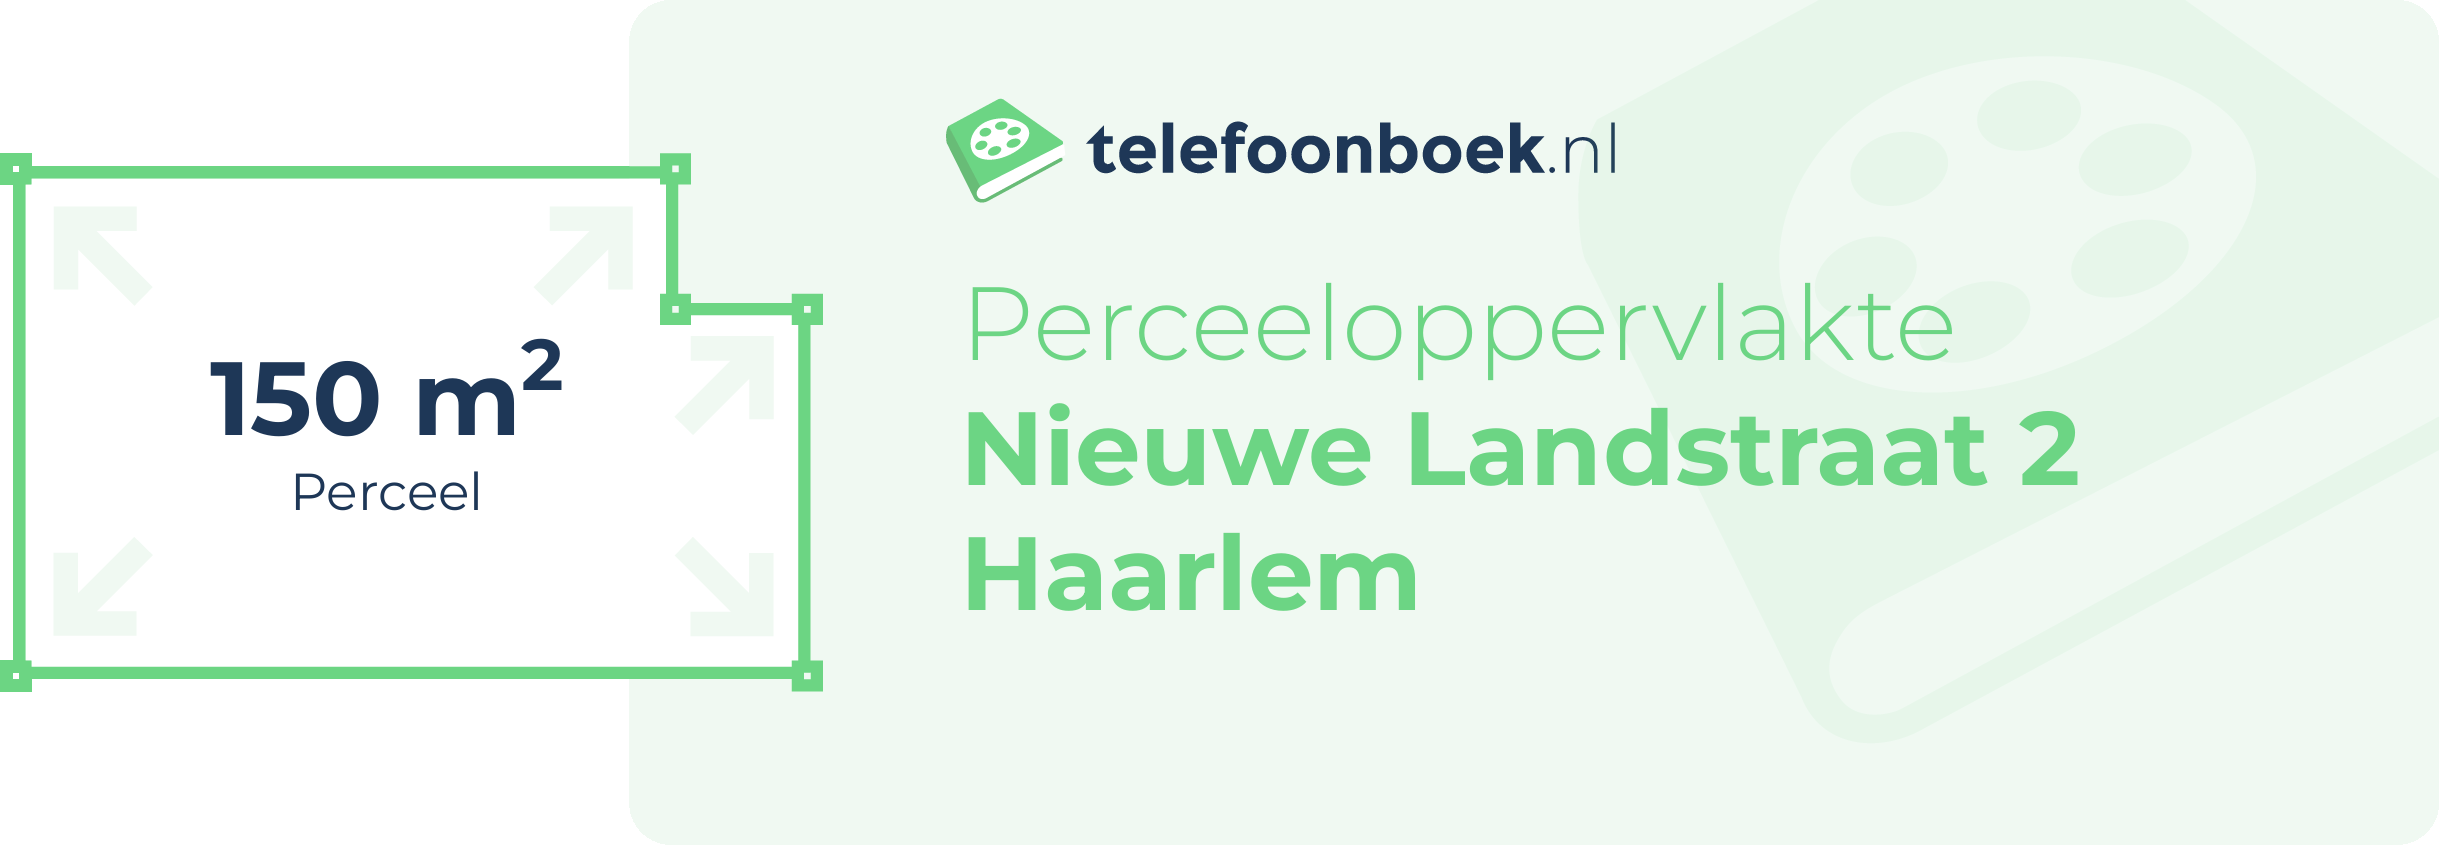 Perceeloppervlakte Nieuwe Landstraat 2 Haarlem